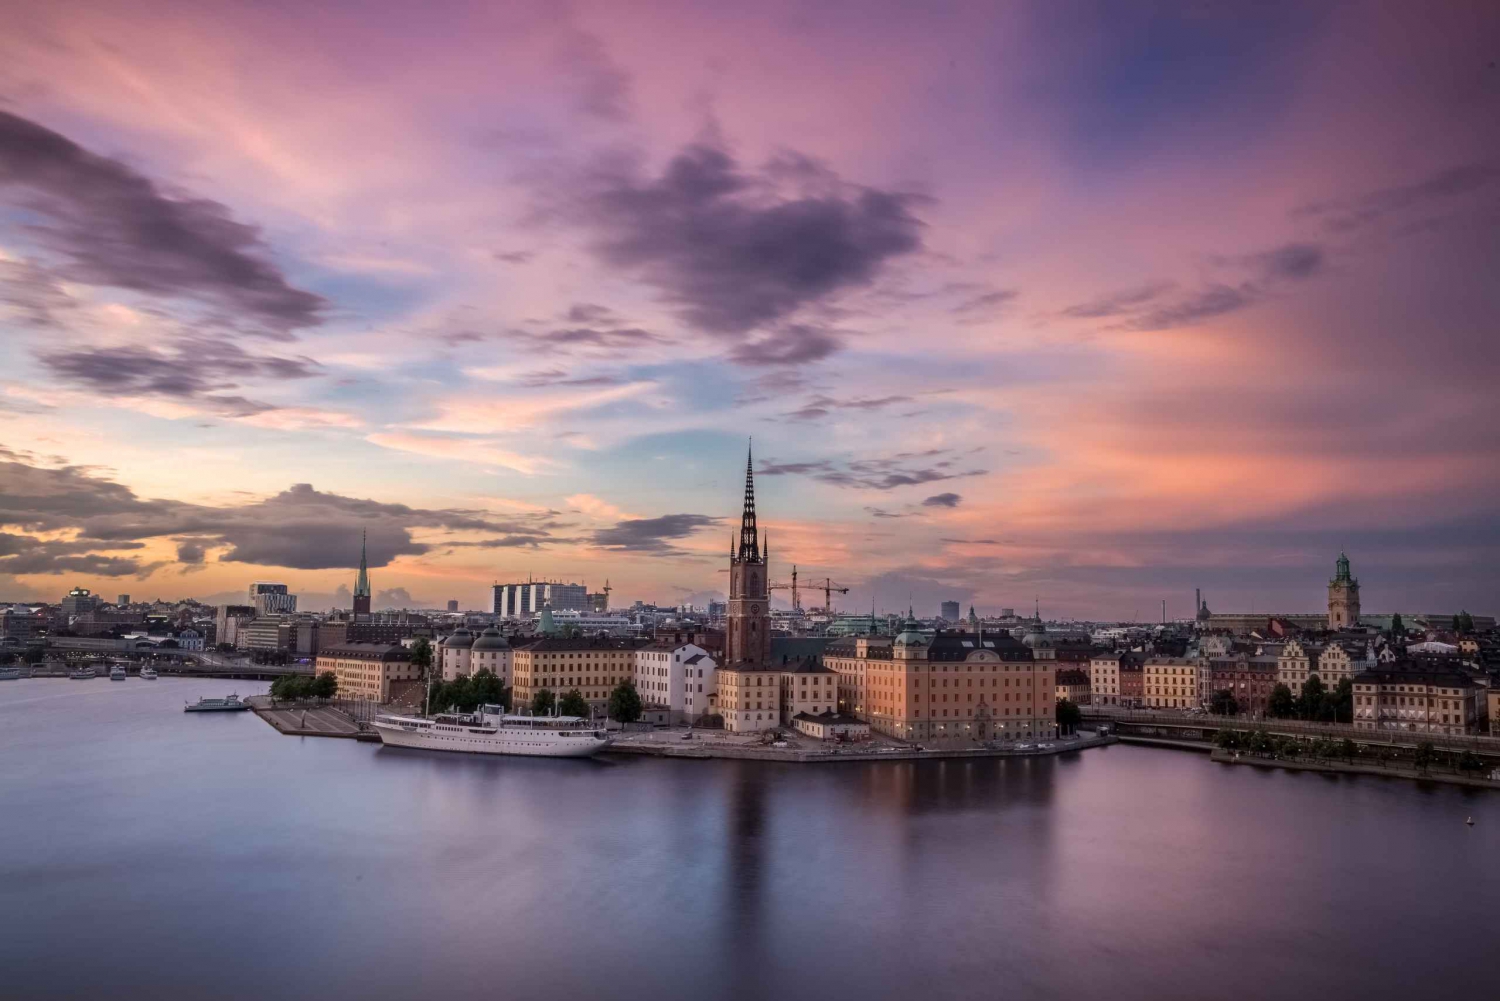 Stoccolma: Cattura i luoghi più fotogenici con un abitante del posto